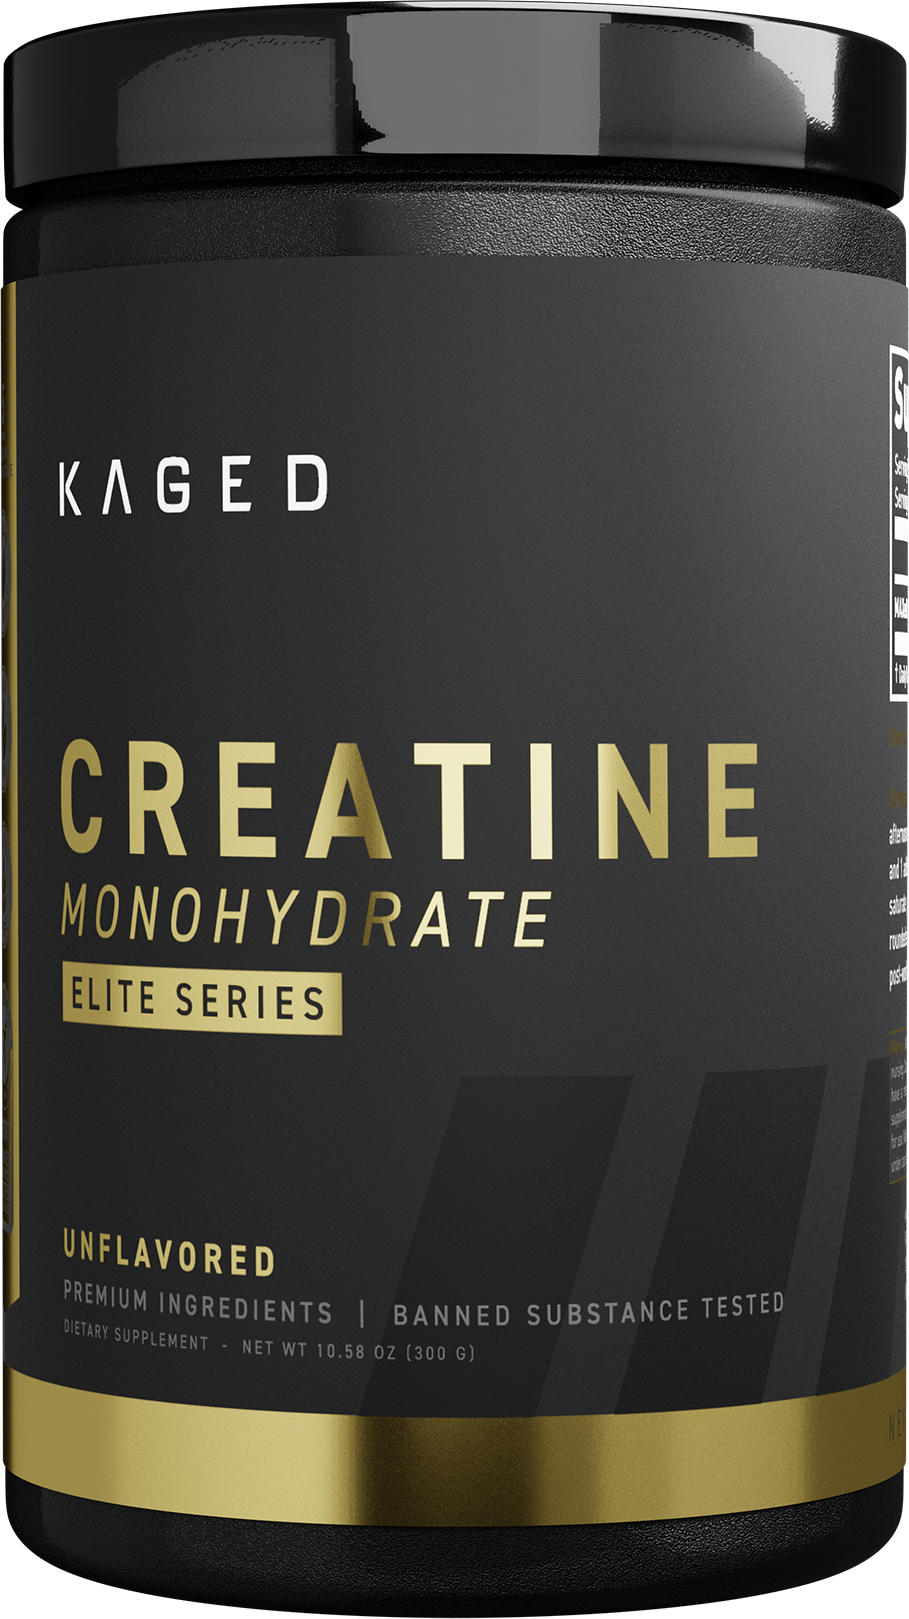 Kaged Creatine Monohydrate Elite